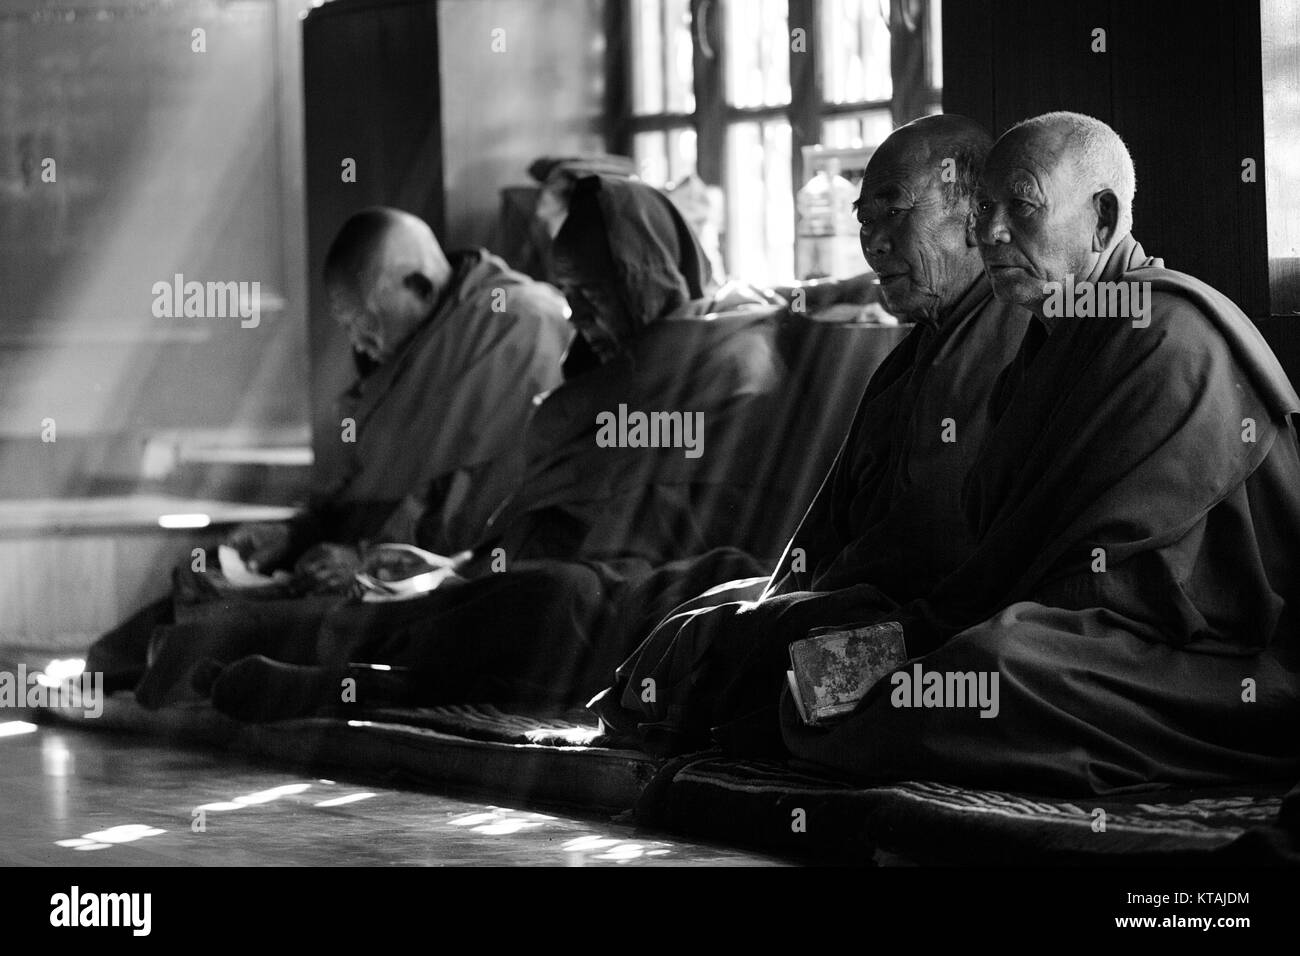 Les moines bouddhistes, assis à la fenêtre et priant jour de festival, le monastère de Diskit, La Vallée de Nubra, Ladakh, le Jammu-et-Cachemire, en Inde. Le noir et blanc Banque D'Images